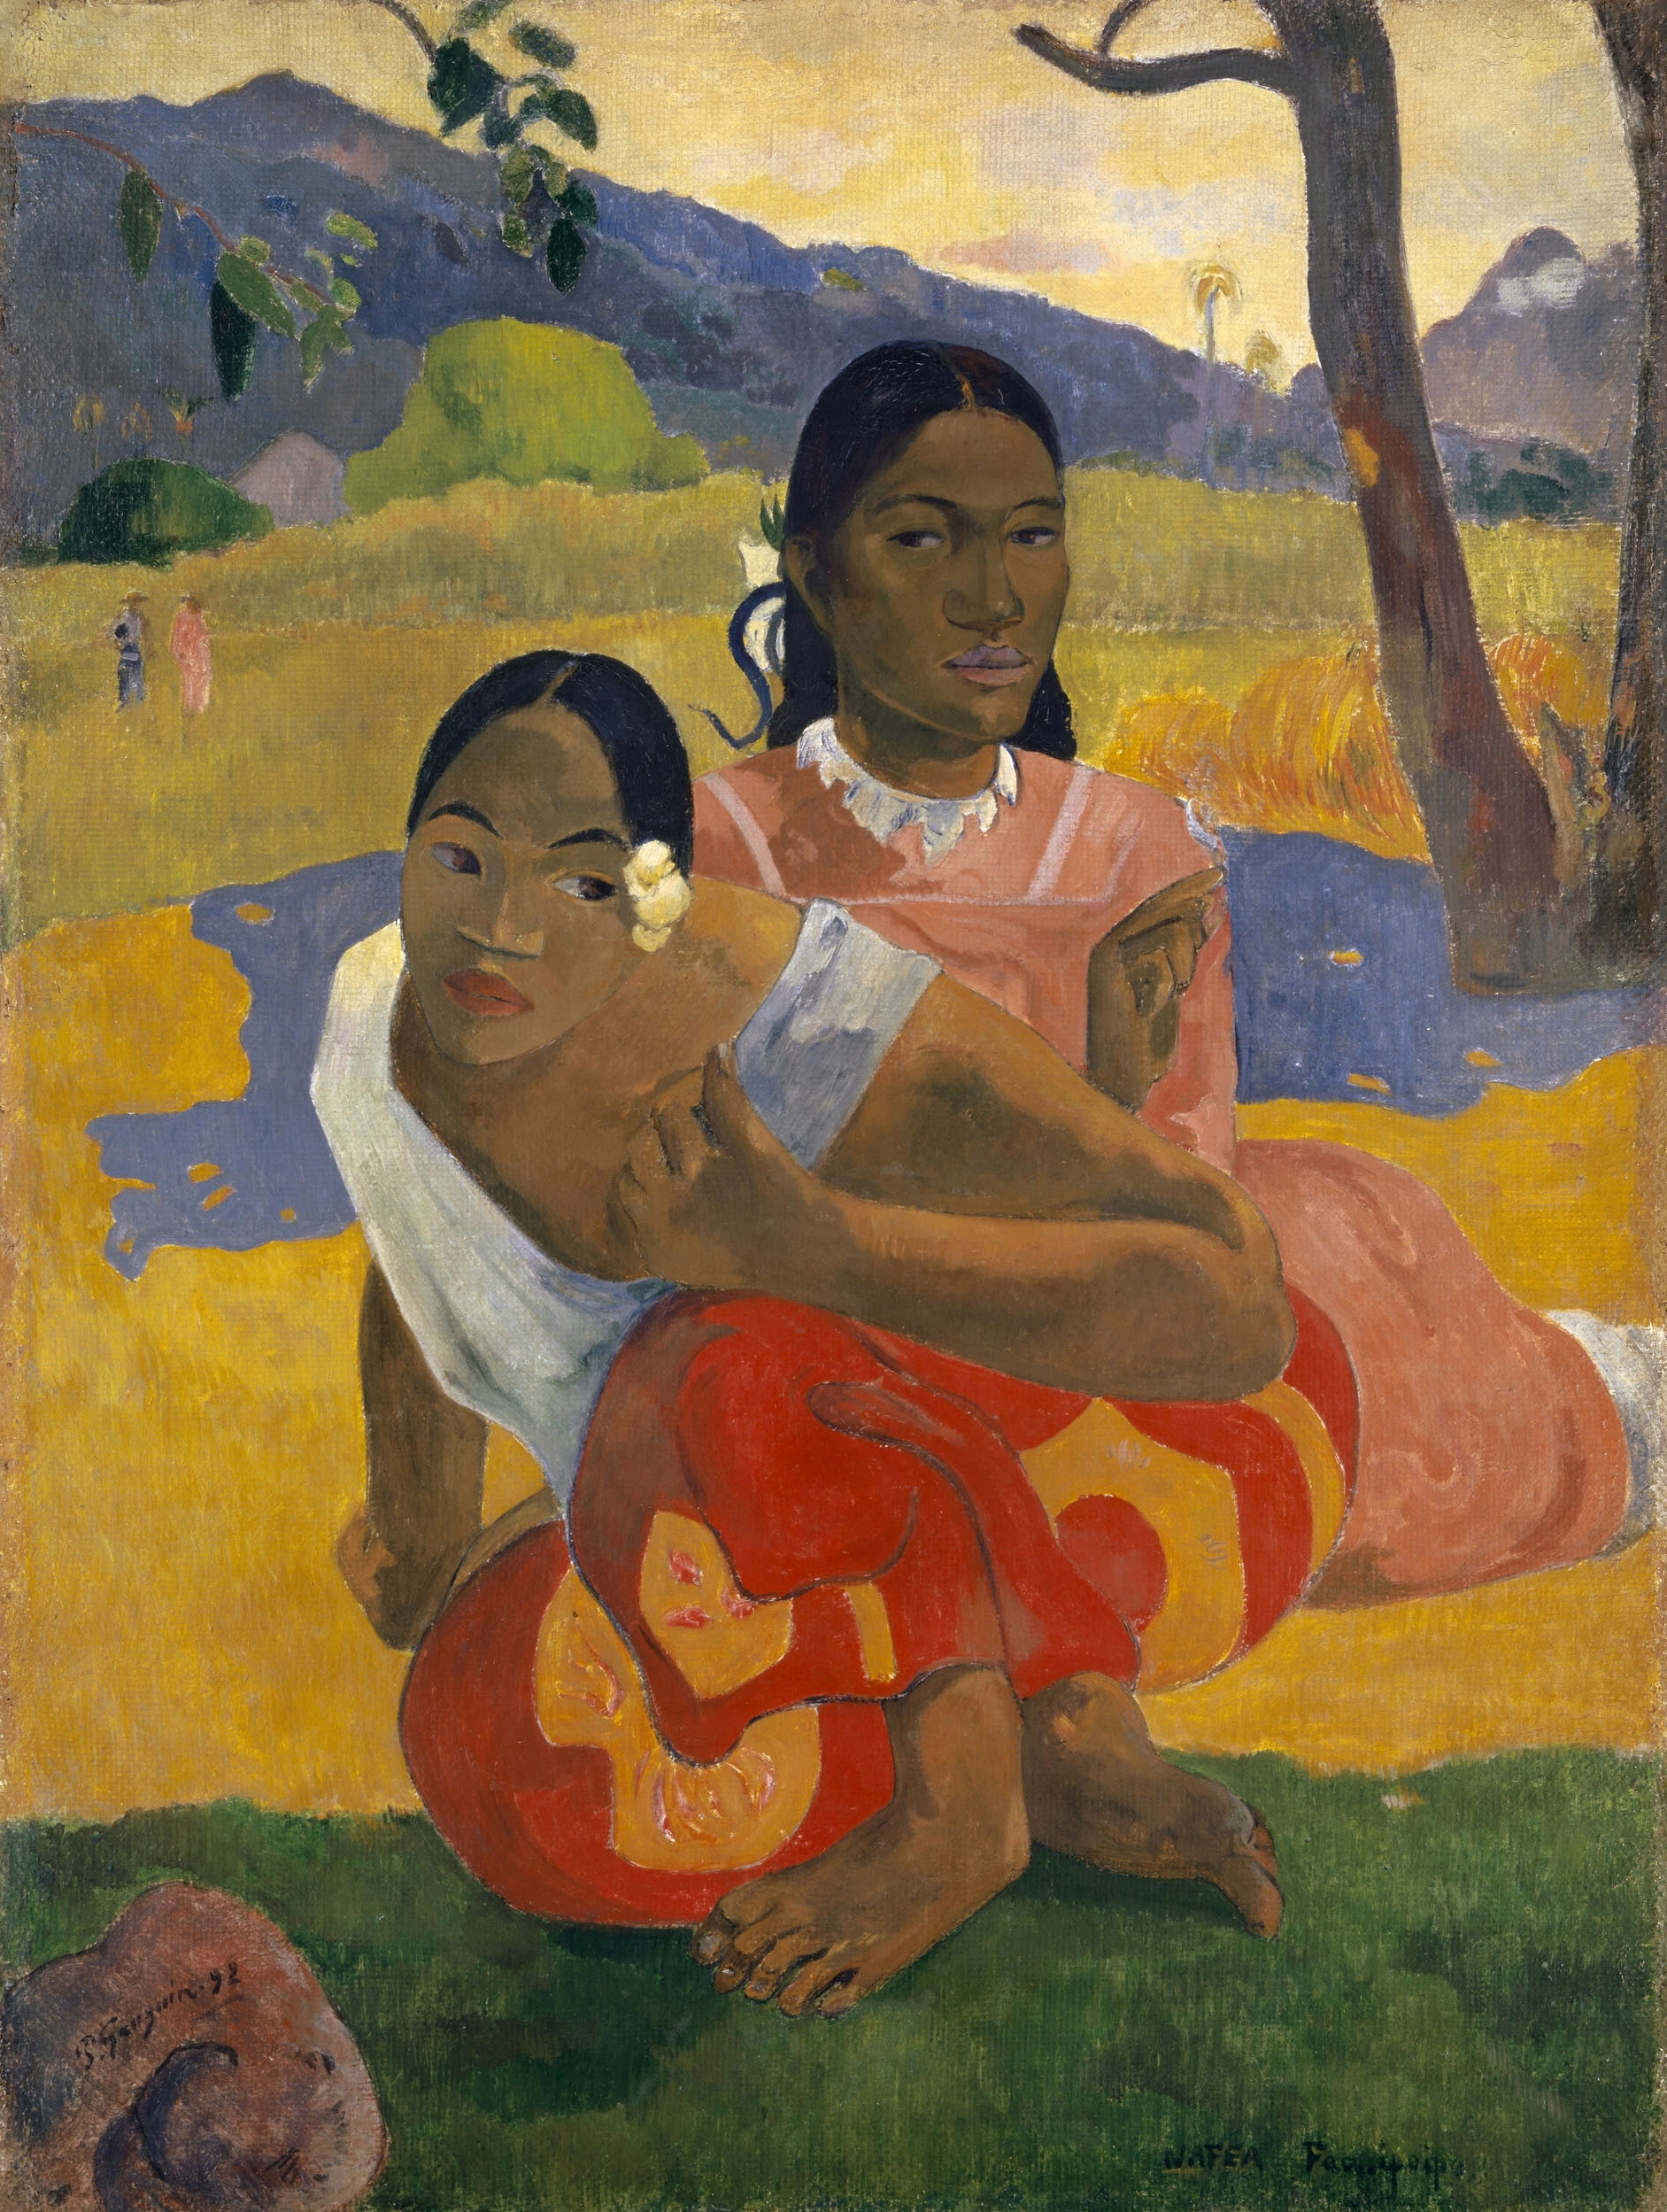 Quando Você Se Casará? by Paul Gauguin - 1892 coleção privada